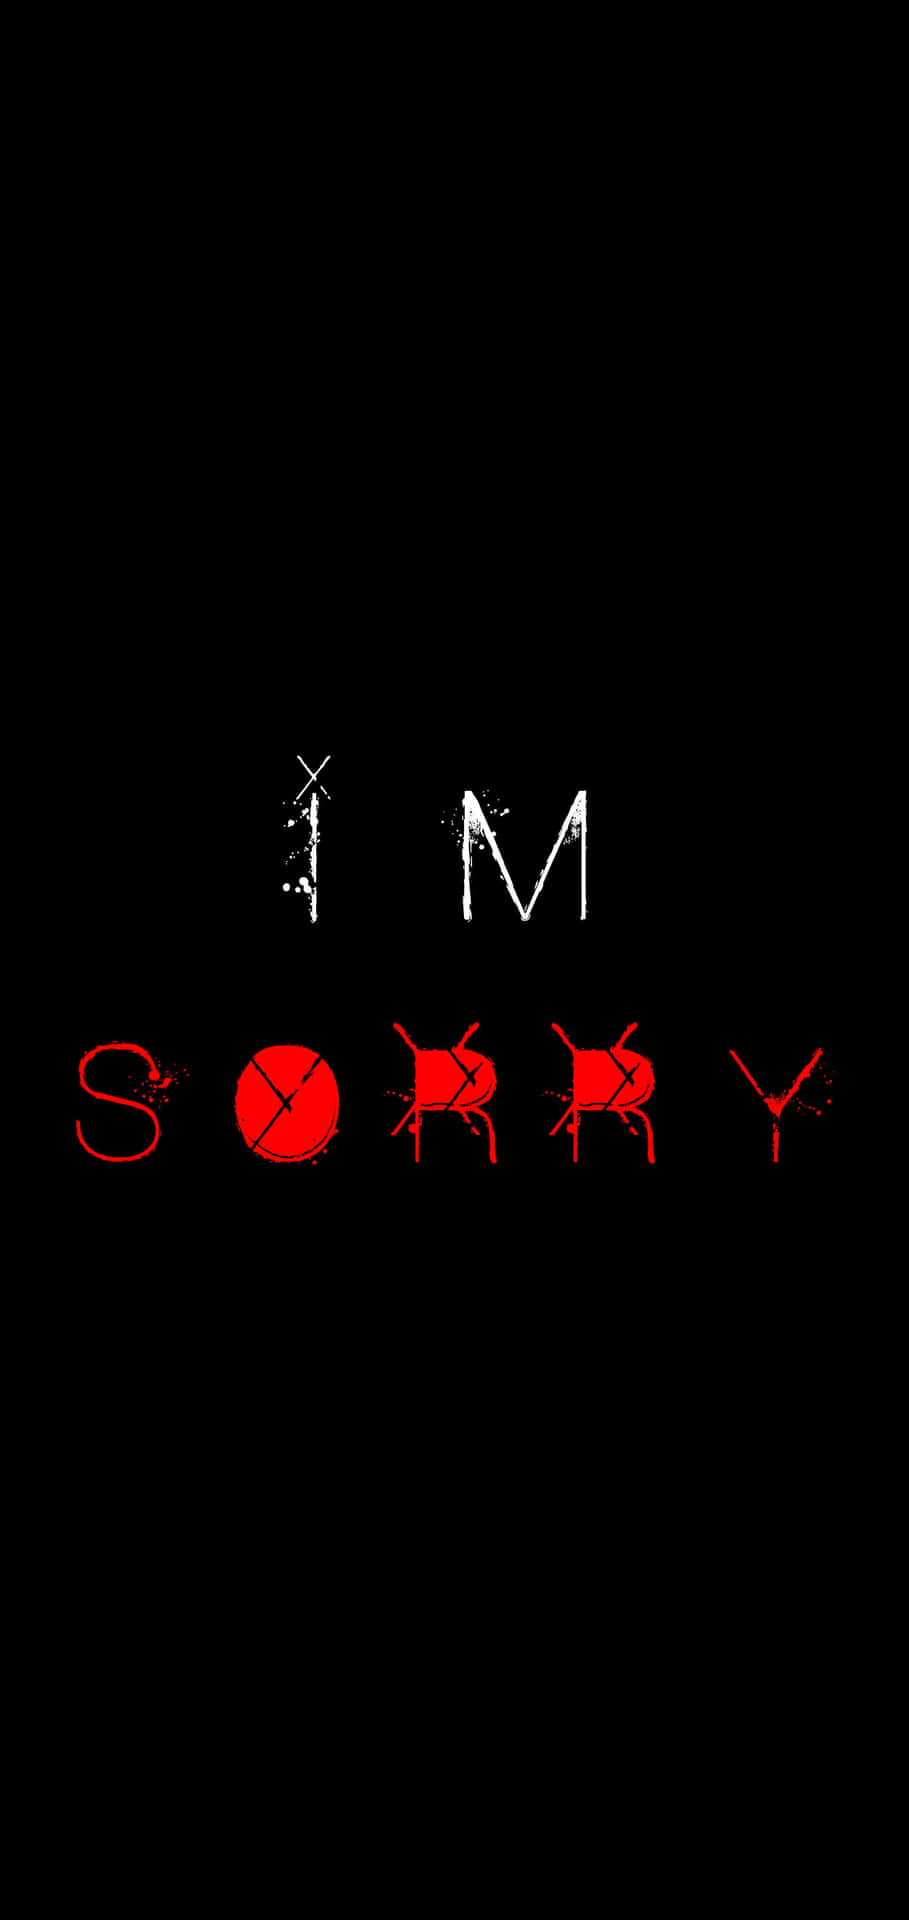 I'm Sorry - I'm Sorry - I'm Sorry - I'm Sorry - I'm